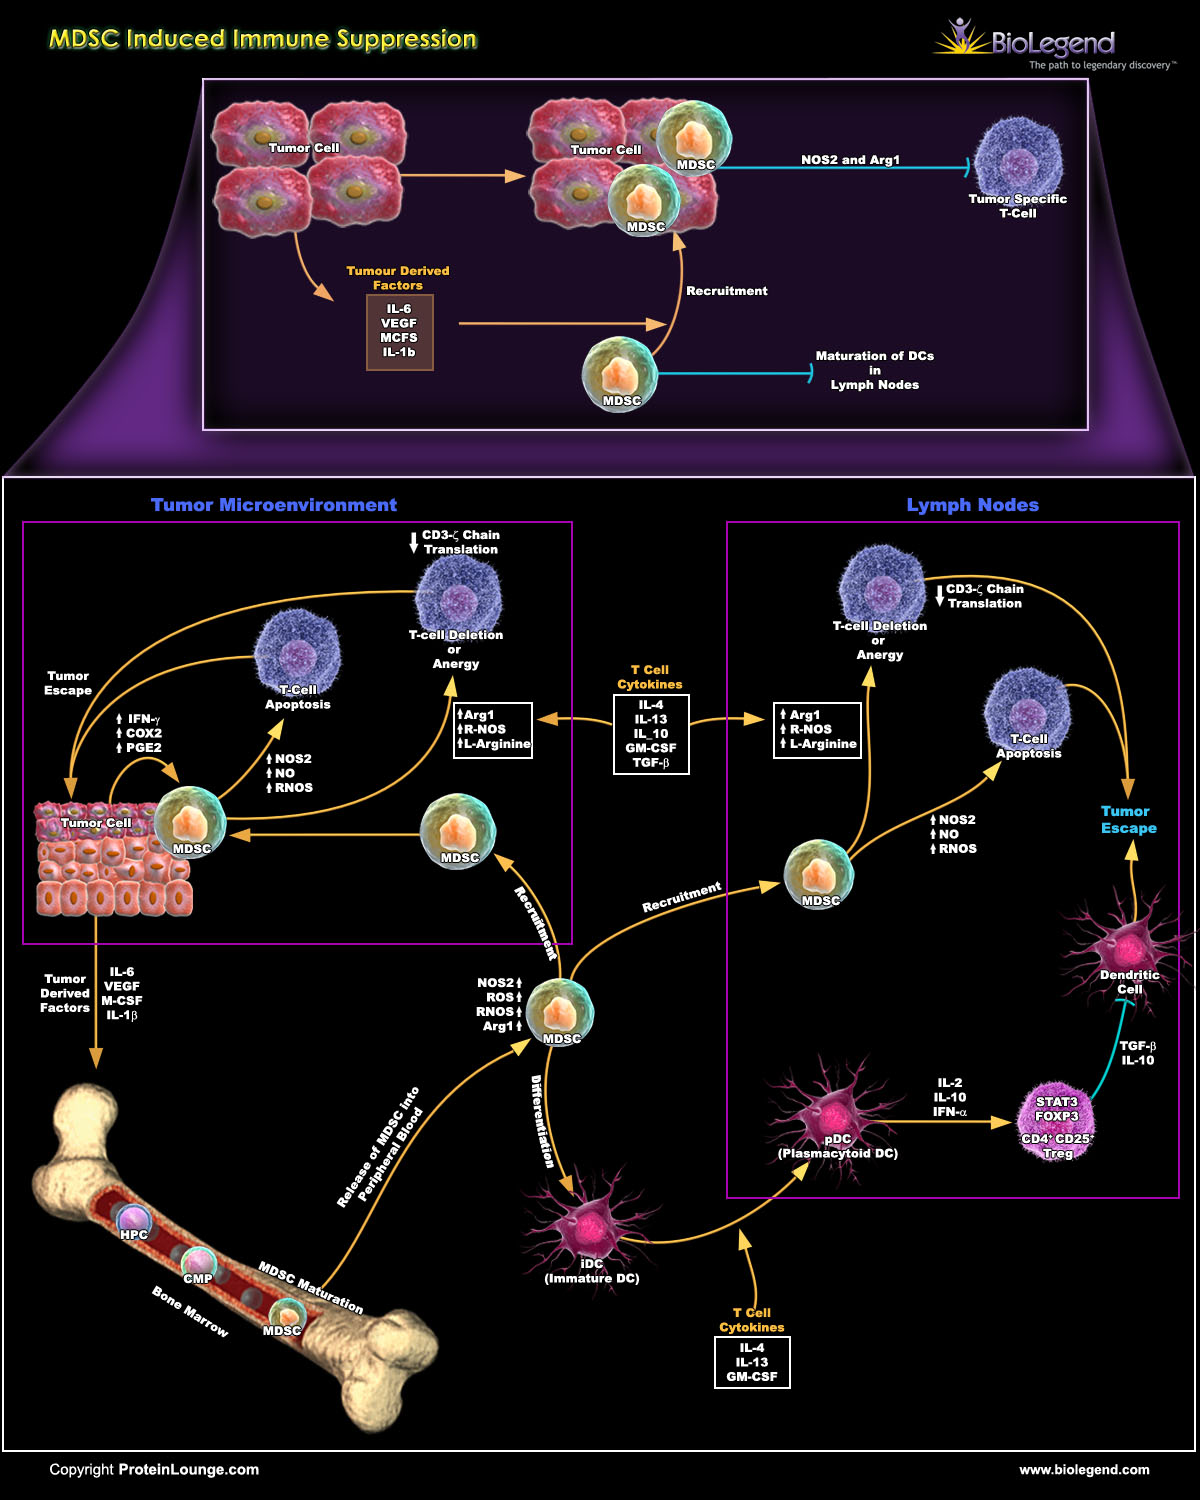 >Biolegend: MDSC-induced Immune Suppression Scientific Pathway Poster